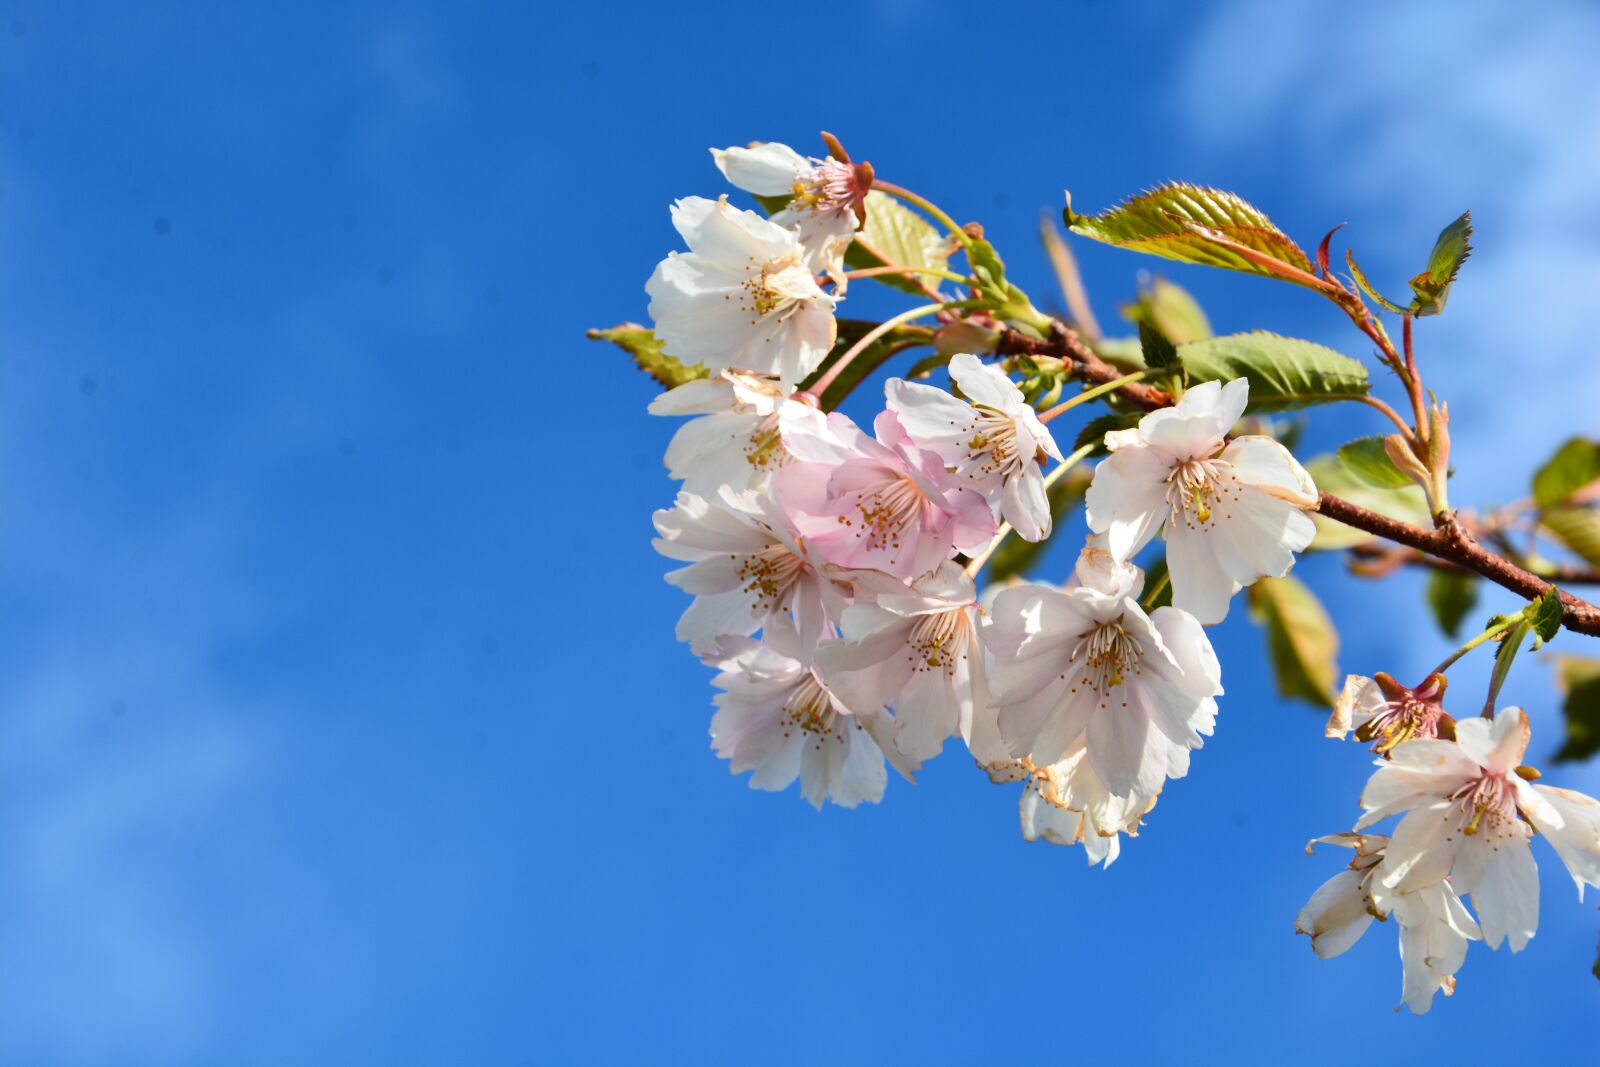 Nikon D7100 sample photo. Blossom, hanami, cherry photography